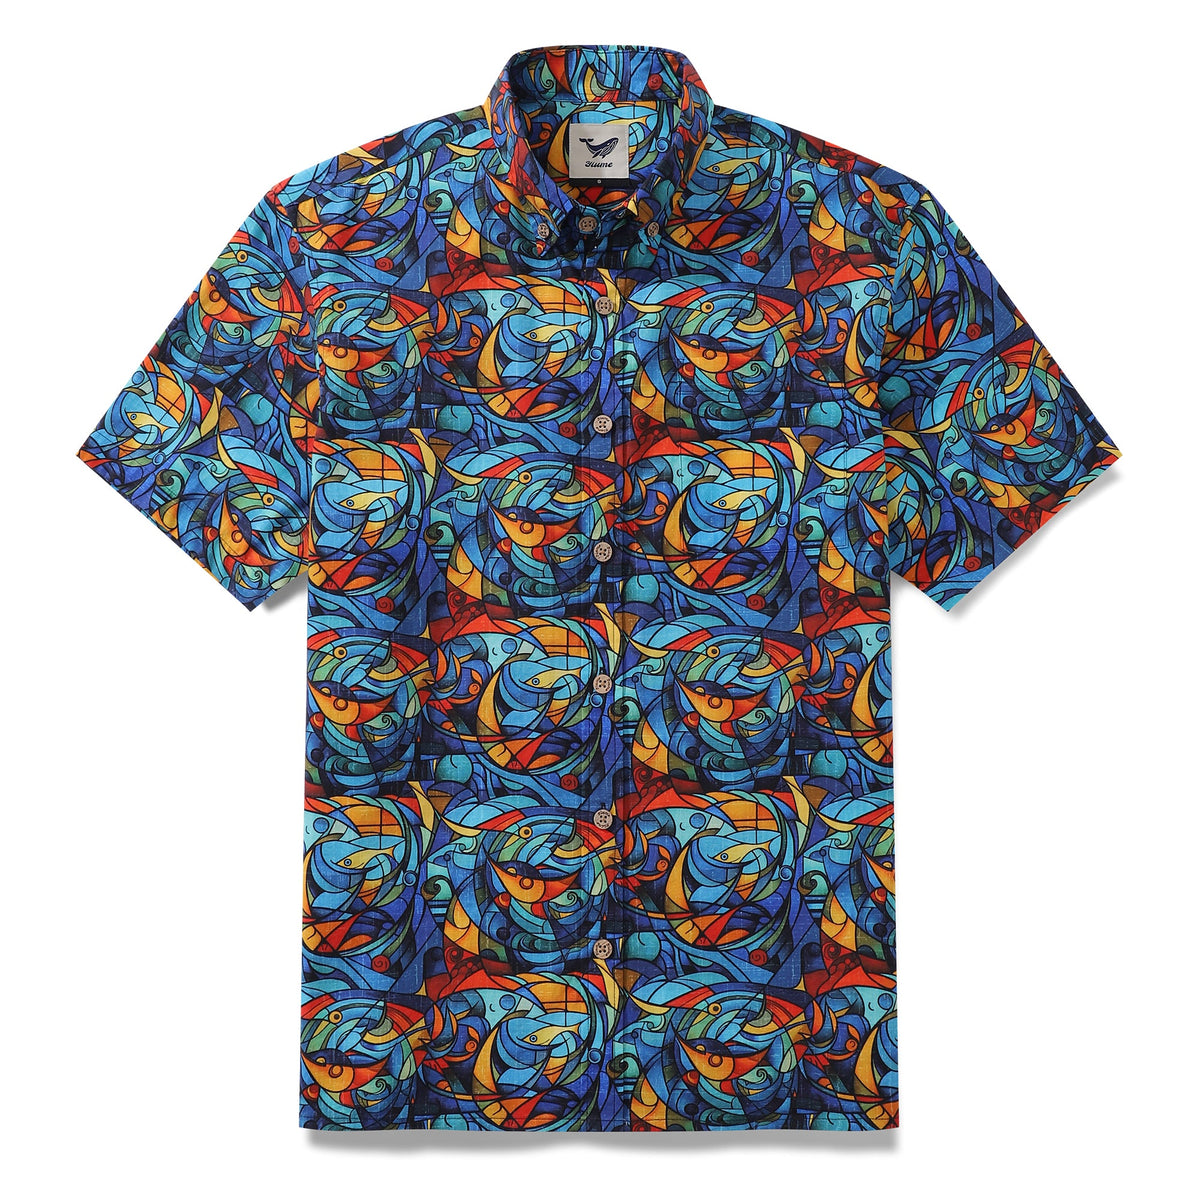 Men's Hawaiian Shirt Cubism Print Cotton Button-down Short Sleeve Aloh ...